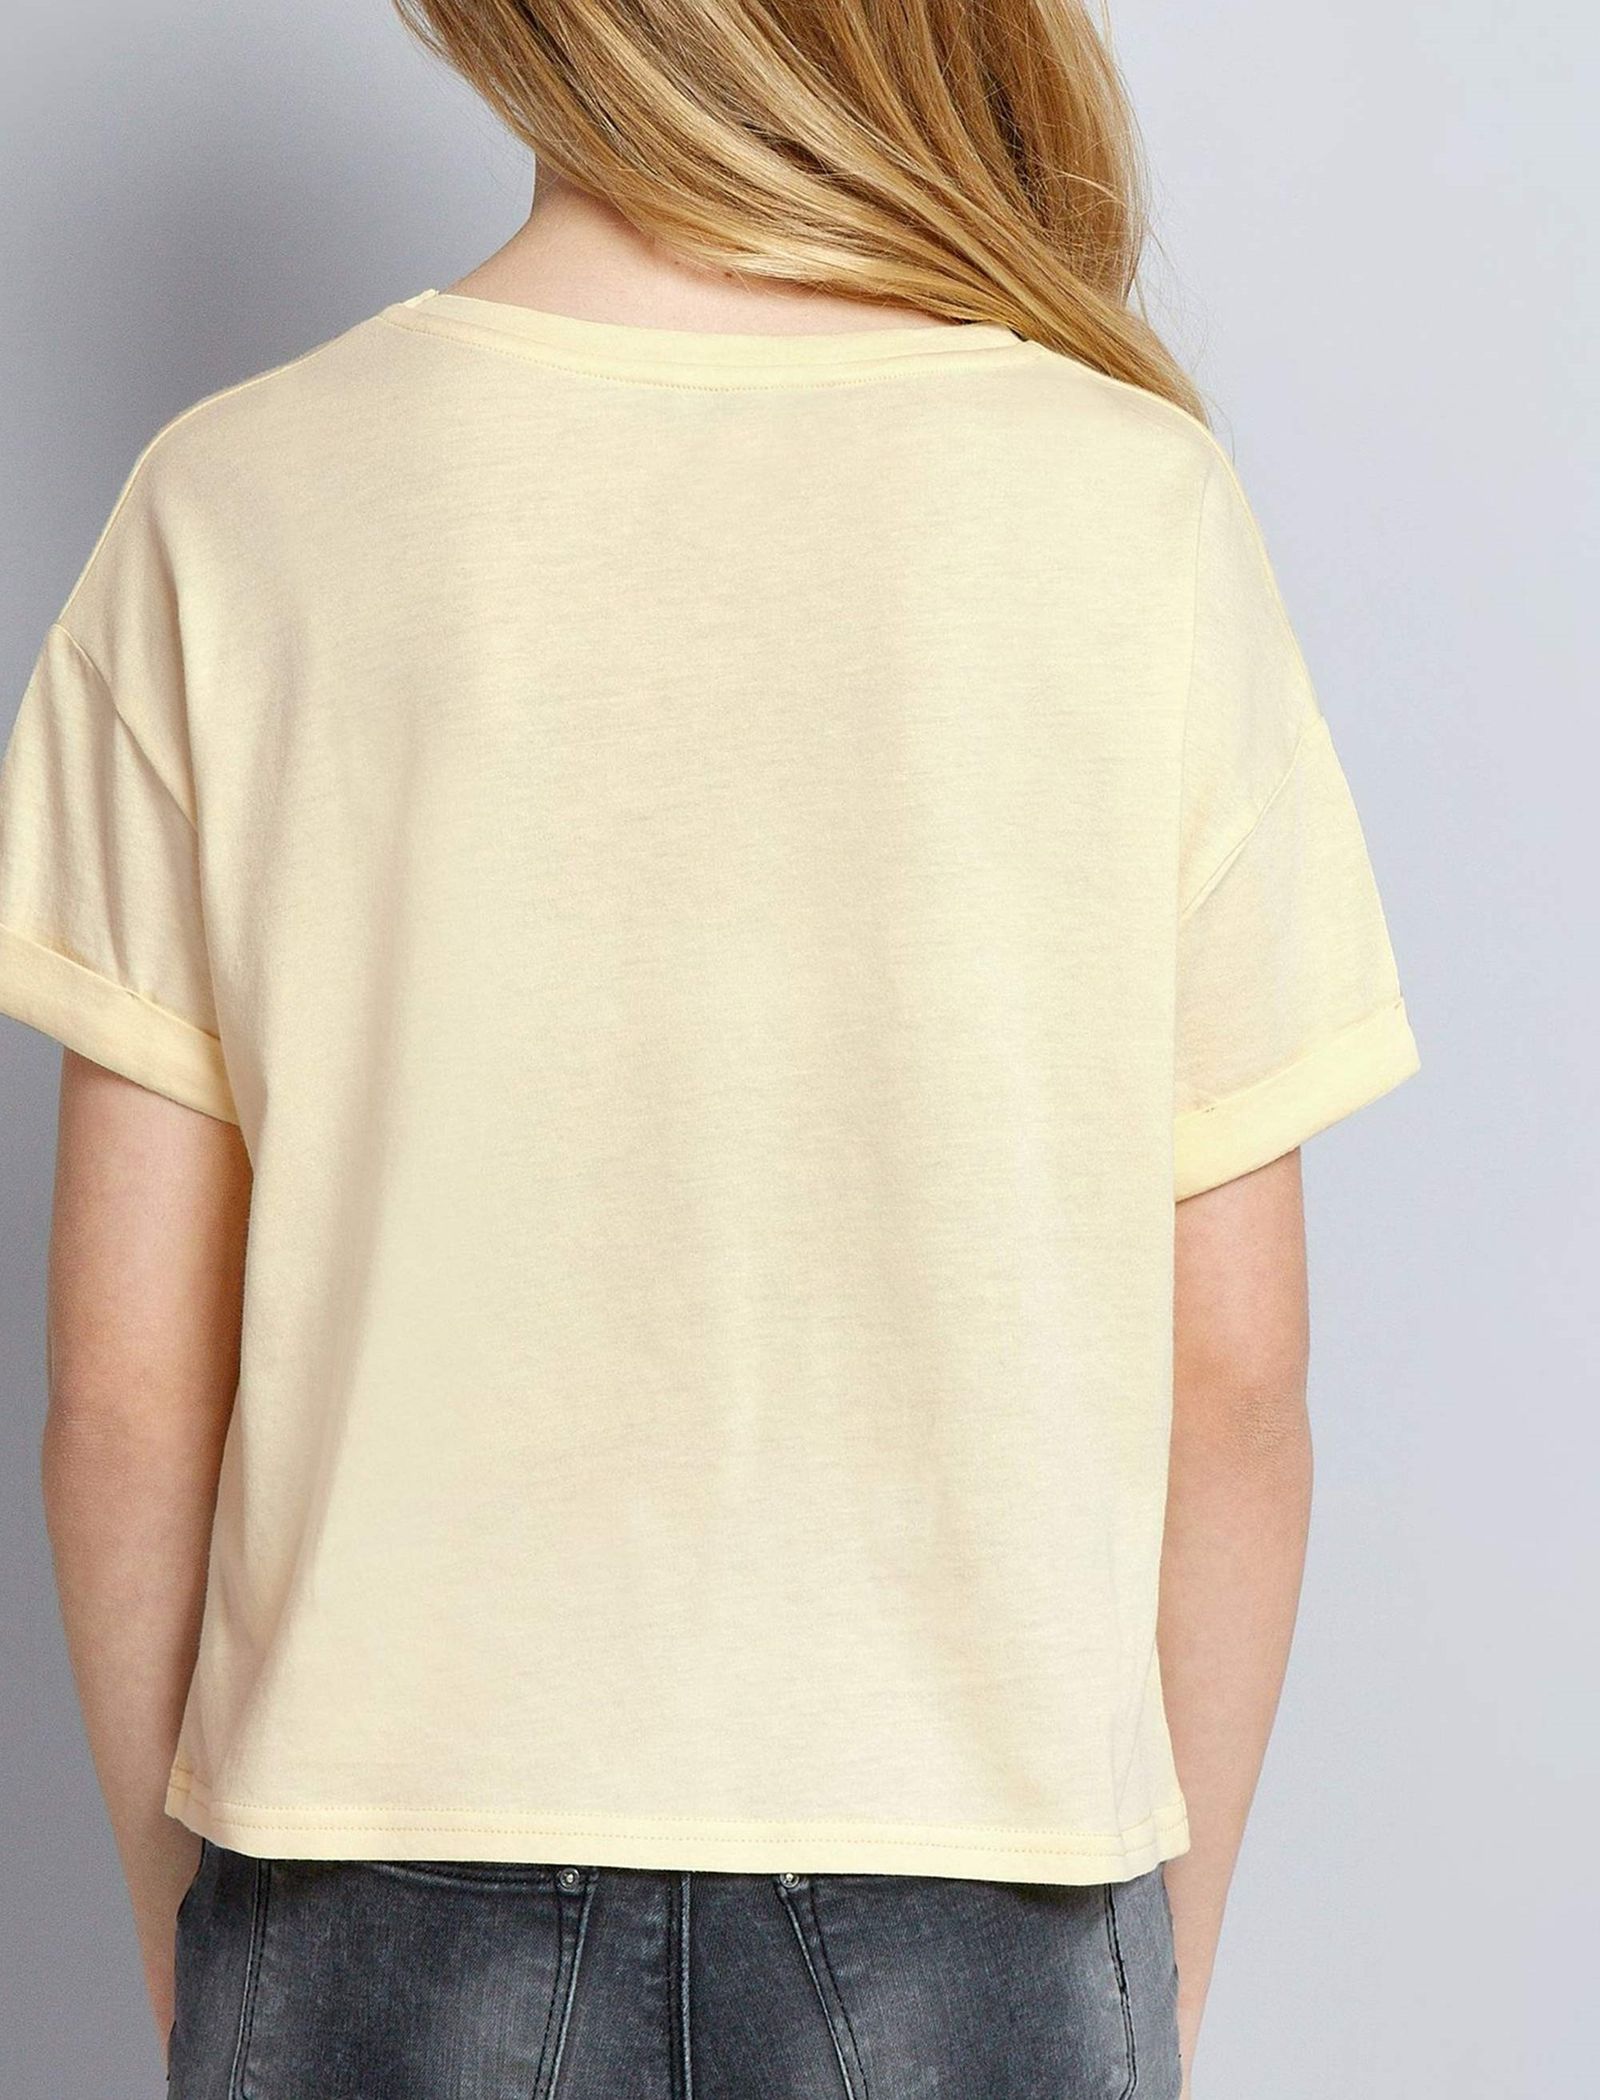 تی شرت یقه گرد دخترانه - نیو لوک - زرد روشن - 3